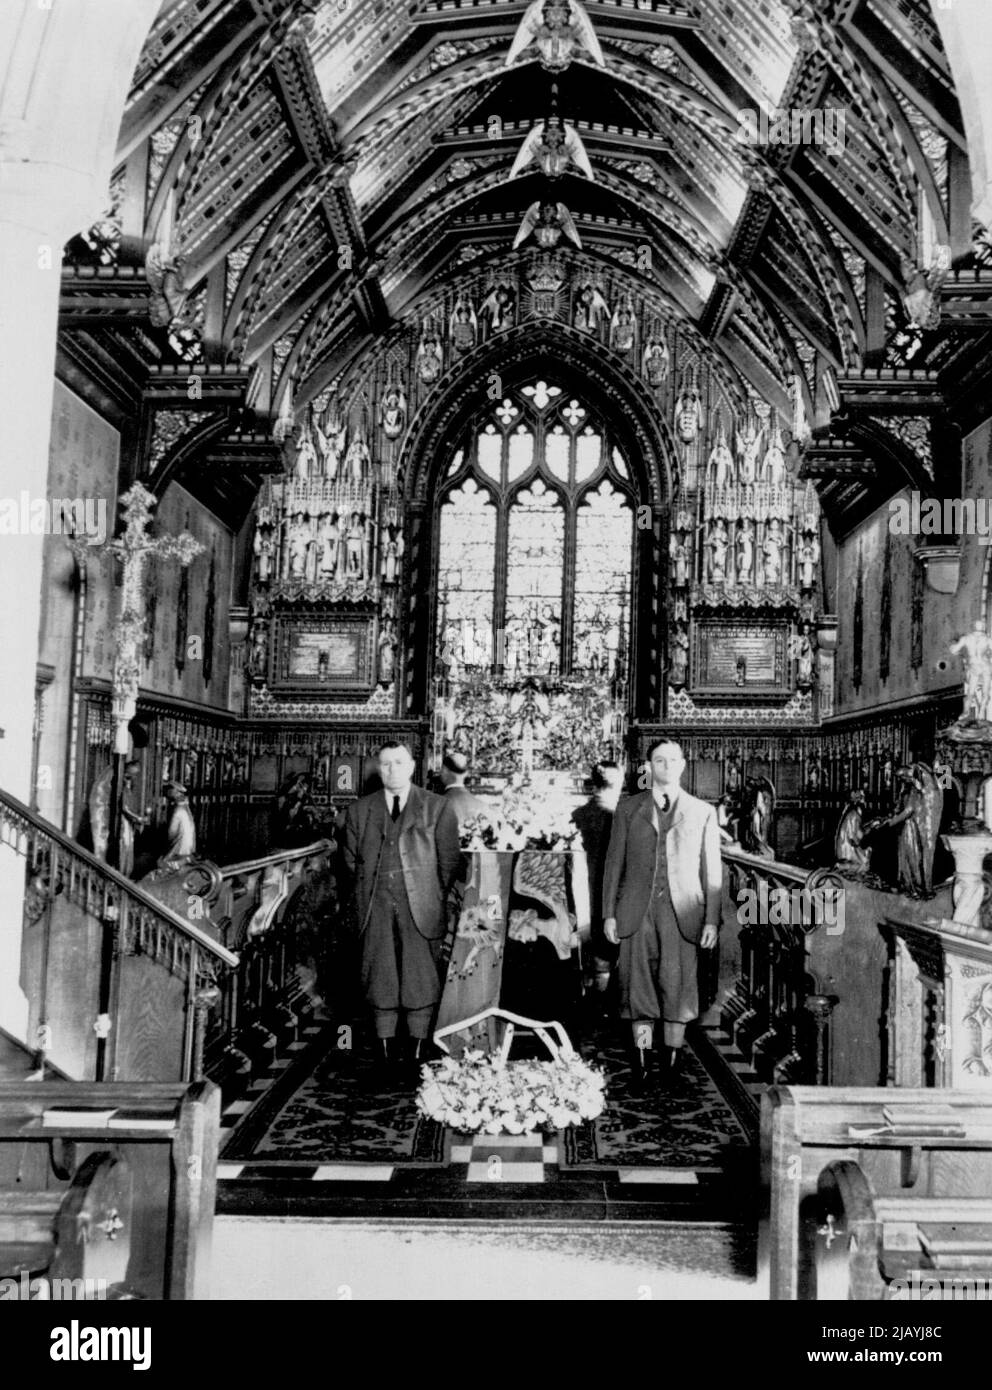 König liegt im Staat in Sandringham - die Kasket, die den Leichnam von König George VI. Enthält, wird von vier Wildhütern mit grünen Jackets flankiert, während sie in der Church of St. Mary Magdalene auf dem königlichen Anwesen in Sandringham ruht. 20. Februar 1952. (Foto von AP Wirephoto). Stockfoto